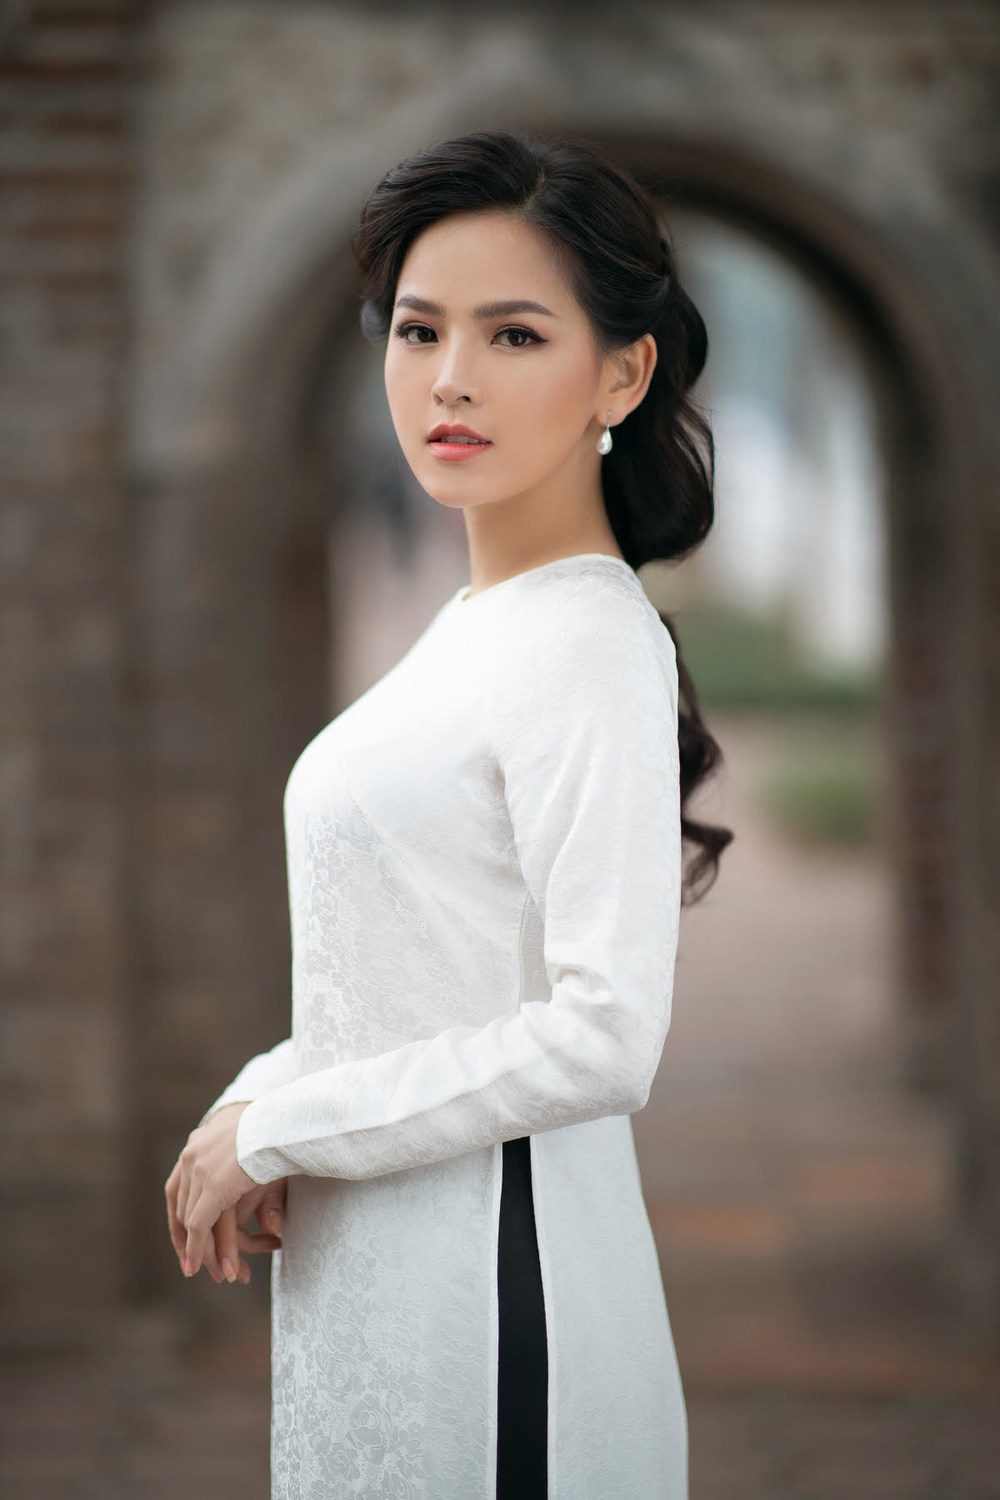 
Không chọn những bộ áo dài ôm dáng, Phi Huyền Trang vẫn xinh đẹp và thướt tha trong tà áo dài trắng dáng rộng truyền thống của người con gái Việt xưa. 